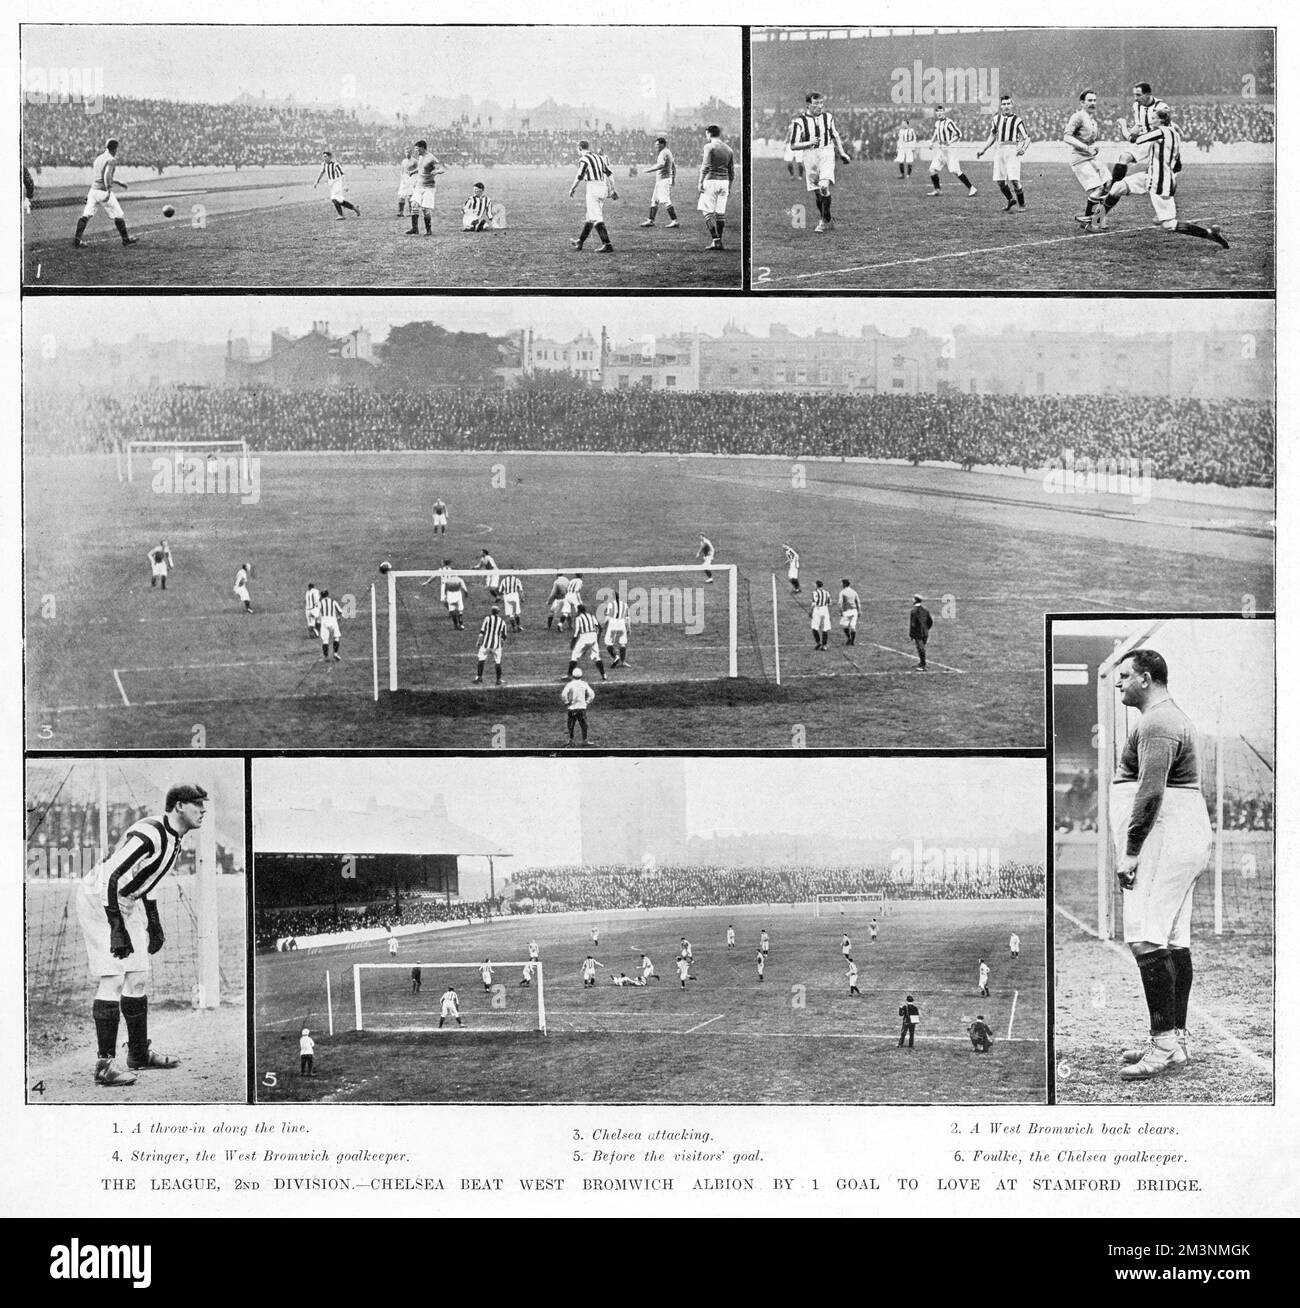 Un montage de photographies montrant l'action de la fixation entre Chelsea et West Bromwich Albion, dans la deuxième division de la Ligue de football, joué au terrain de Chelsea, Stamford Bridge. Le match a été remporté en 1-0 par Chelsea. C'était la première saison de Chelsea dans la Ligue de football, le club n'ayant été fondé qu'en mars 1905. Ils ont terminé troisième dans la division, manquant sur la promotion au niveau supérieur par un endroit, bien que plusieurs points les séparent des deux clubs supérieurs. West Bromwich Albion a terminé quatrième. Deux des photographies de ce montage montrent le goalkeepe respectif Banque D'Images